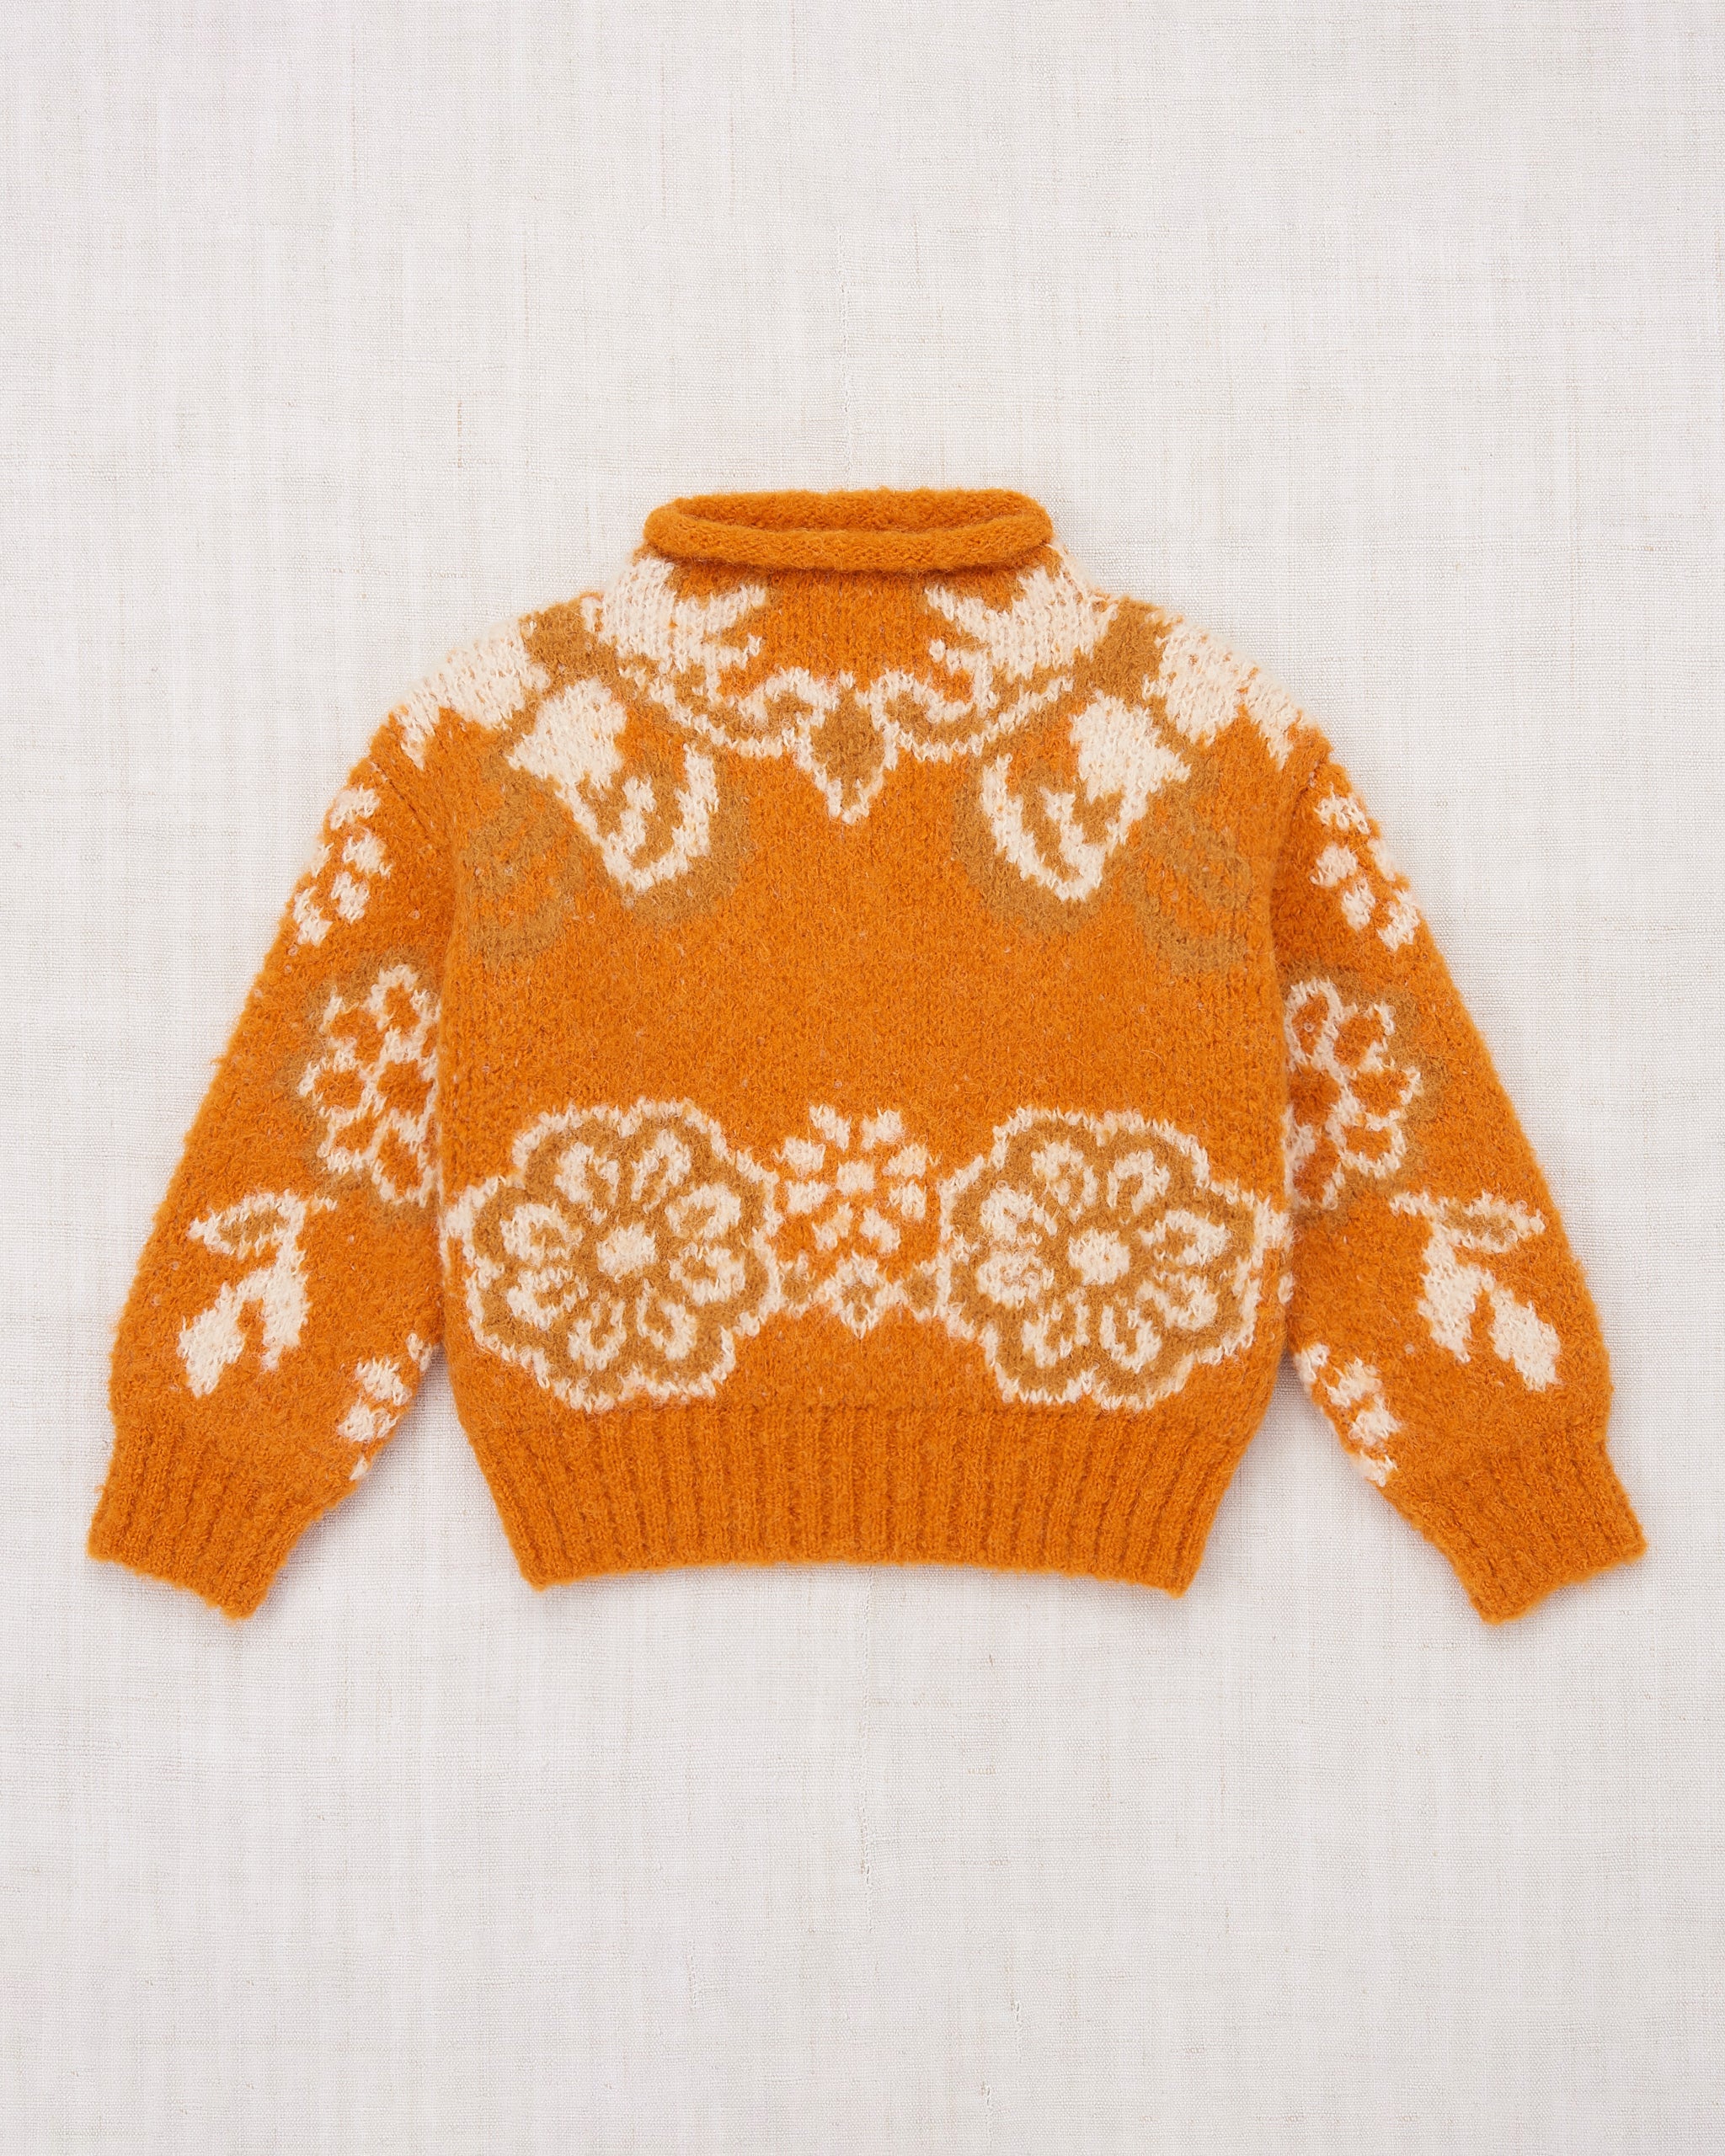 キッズ服女の子用(90cm~)misha&puff simple sweater